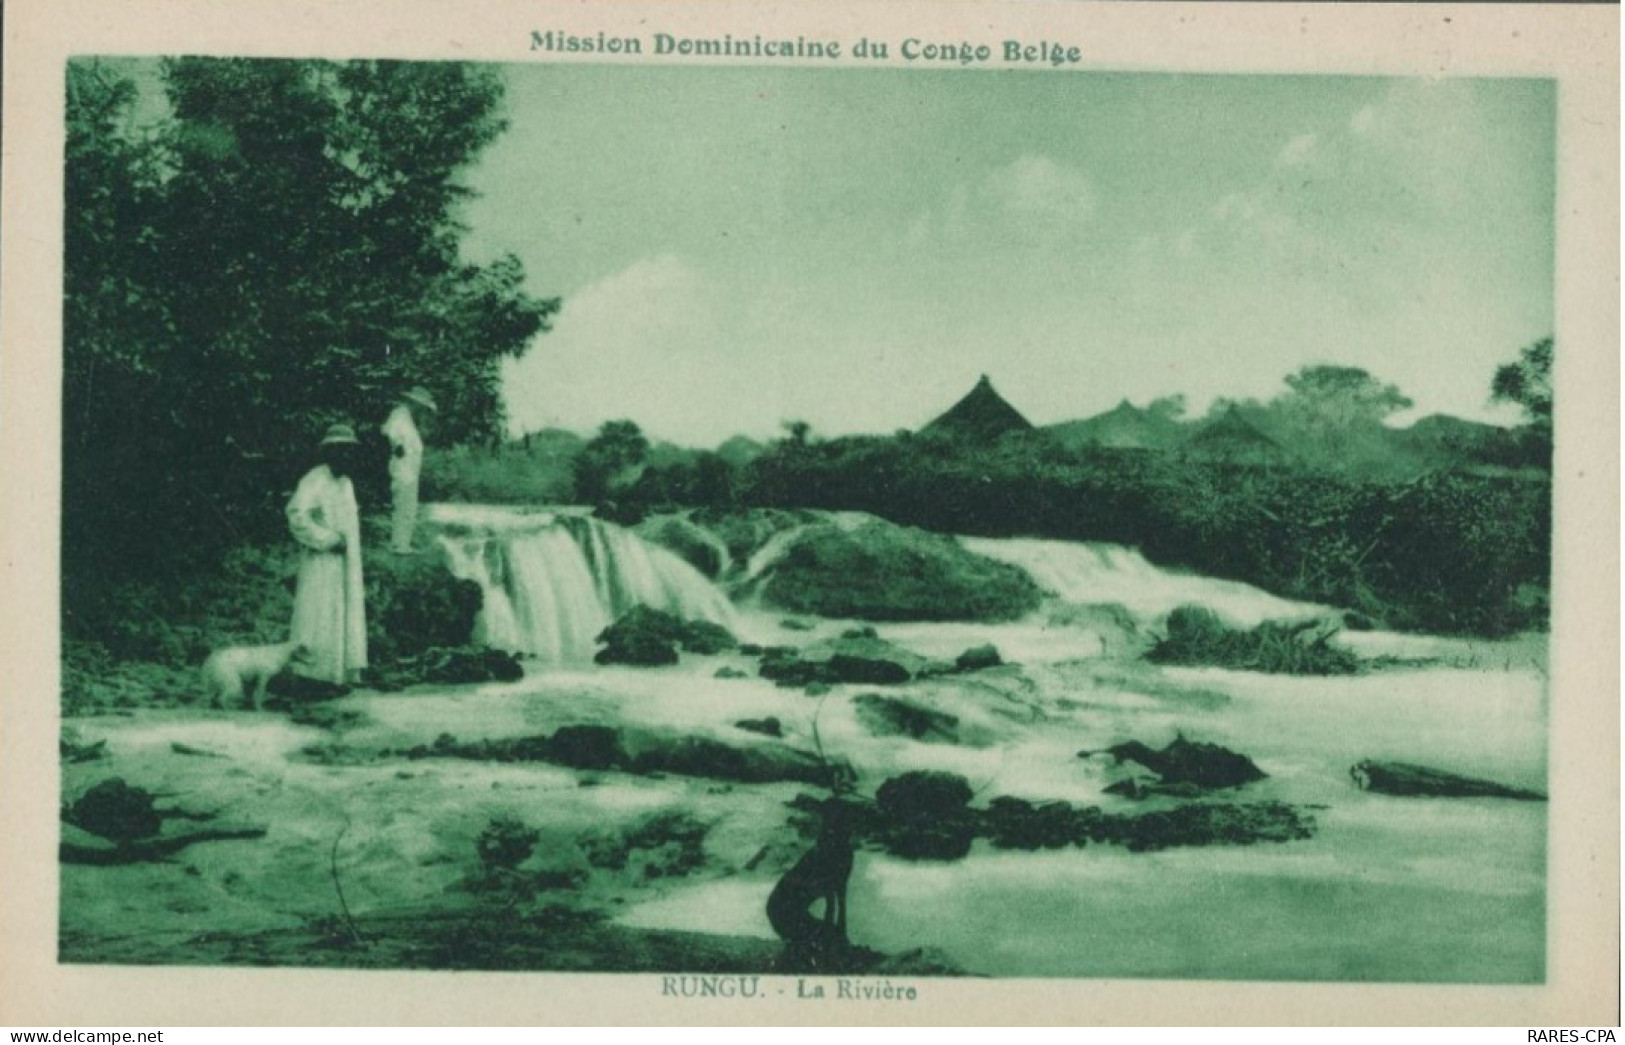 CONGO BELGE - La Mission de RUNGU - Les Missions DOMINICAINES - Série de CINQ Cartes postales